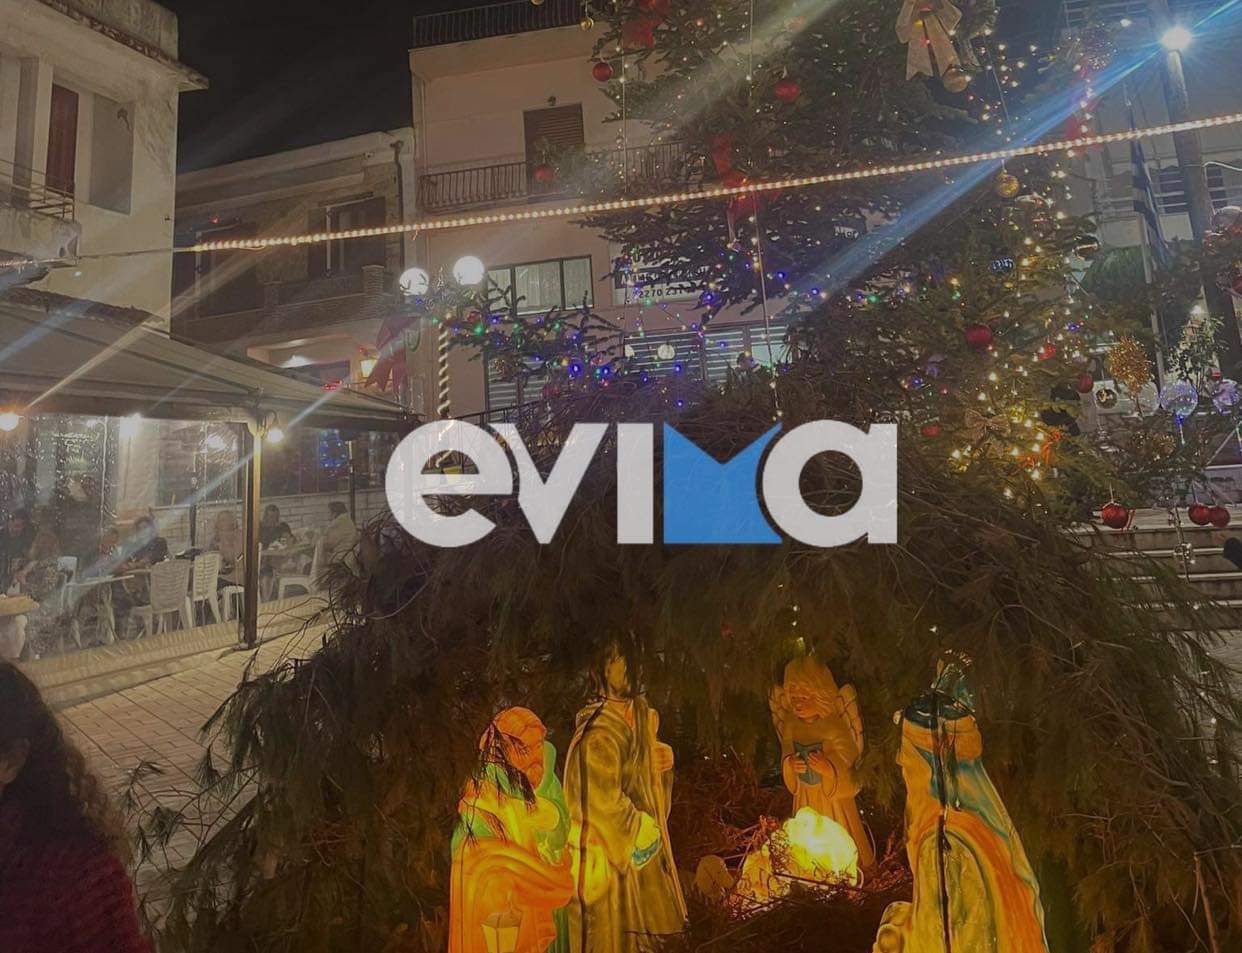 Δήμαρχος στην Εύβοια άναψε το Χριστουγεννιάτικο δέντρο και ανακοίνωσε νέα έργα!